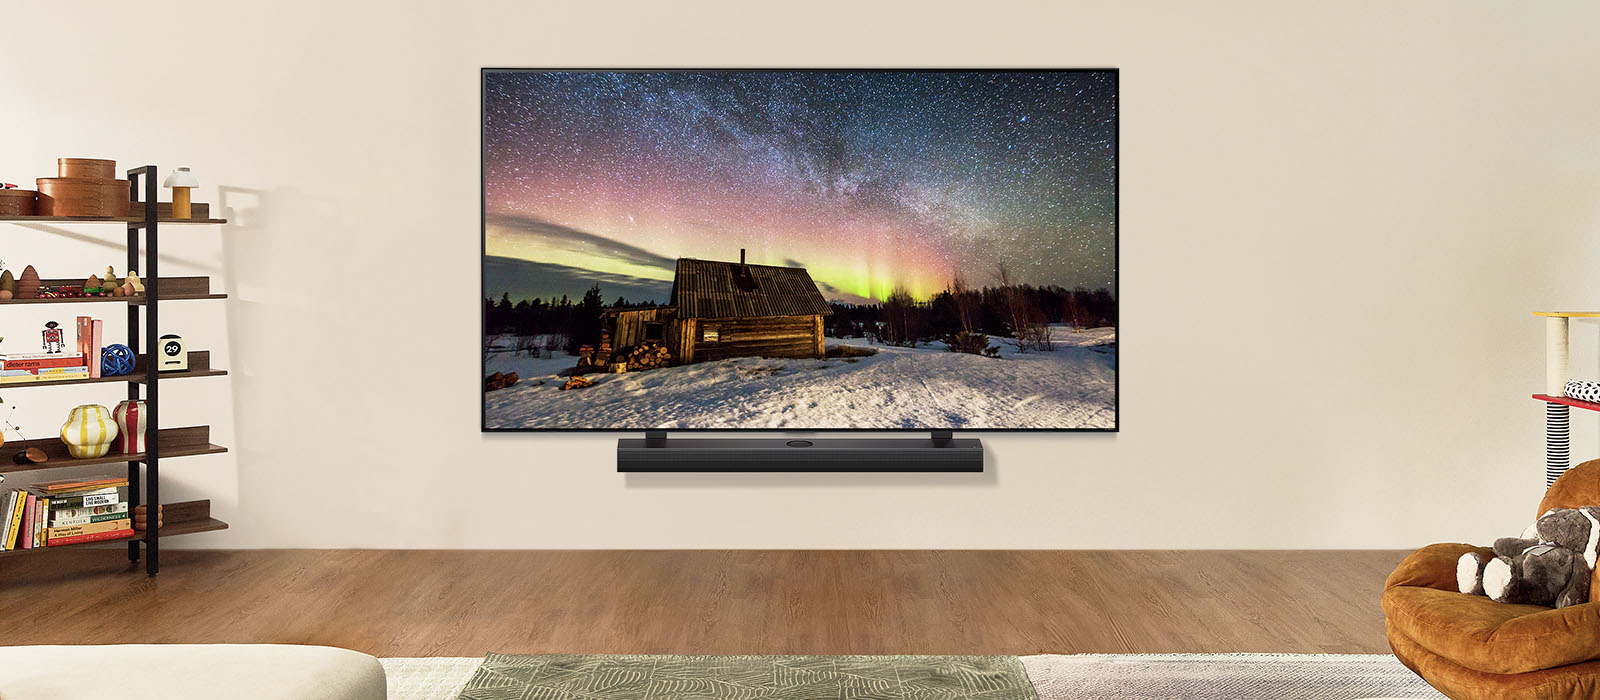 يظهر تلفزيون LG TV ومكبر صوت LG Soundbar في غرفة معيشة عصرية في وضح النهار. يتم عرض صورة الشفق القطبي على الشاشة بمستويات السطوع المثالية.